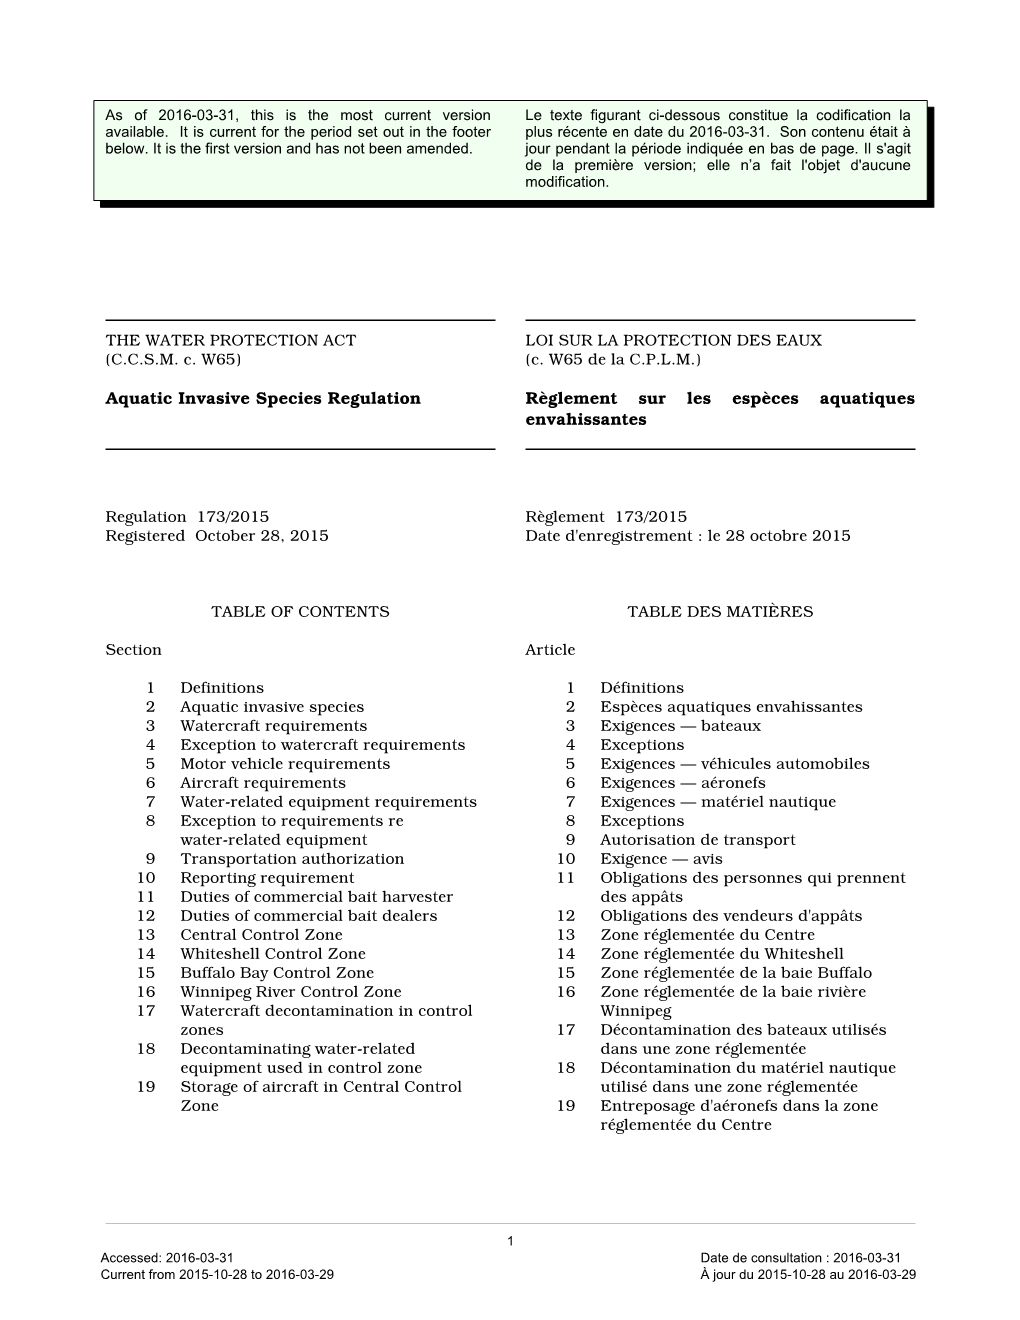 Aquatic Invasive Species Regulation, M.R. 173/2015